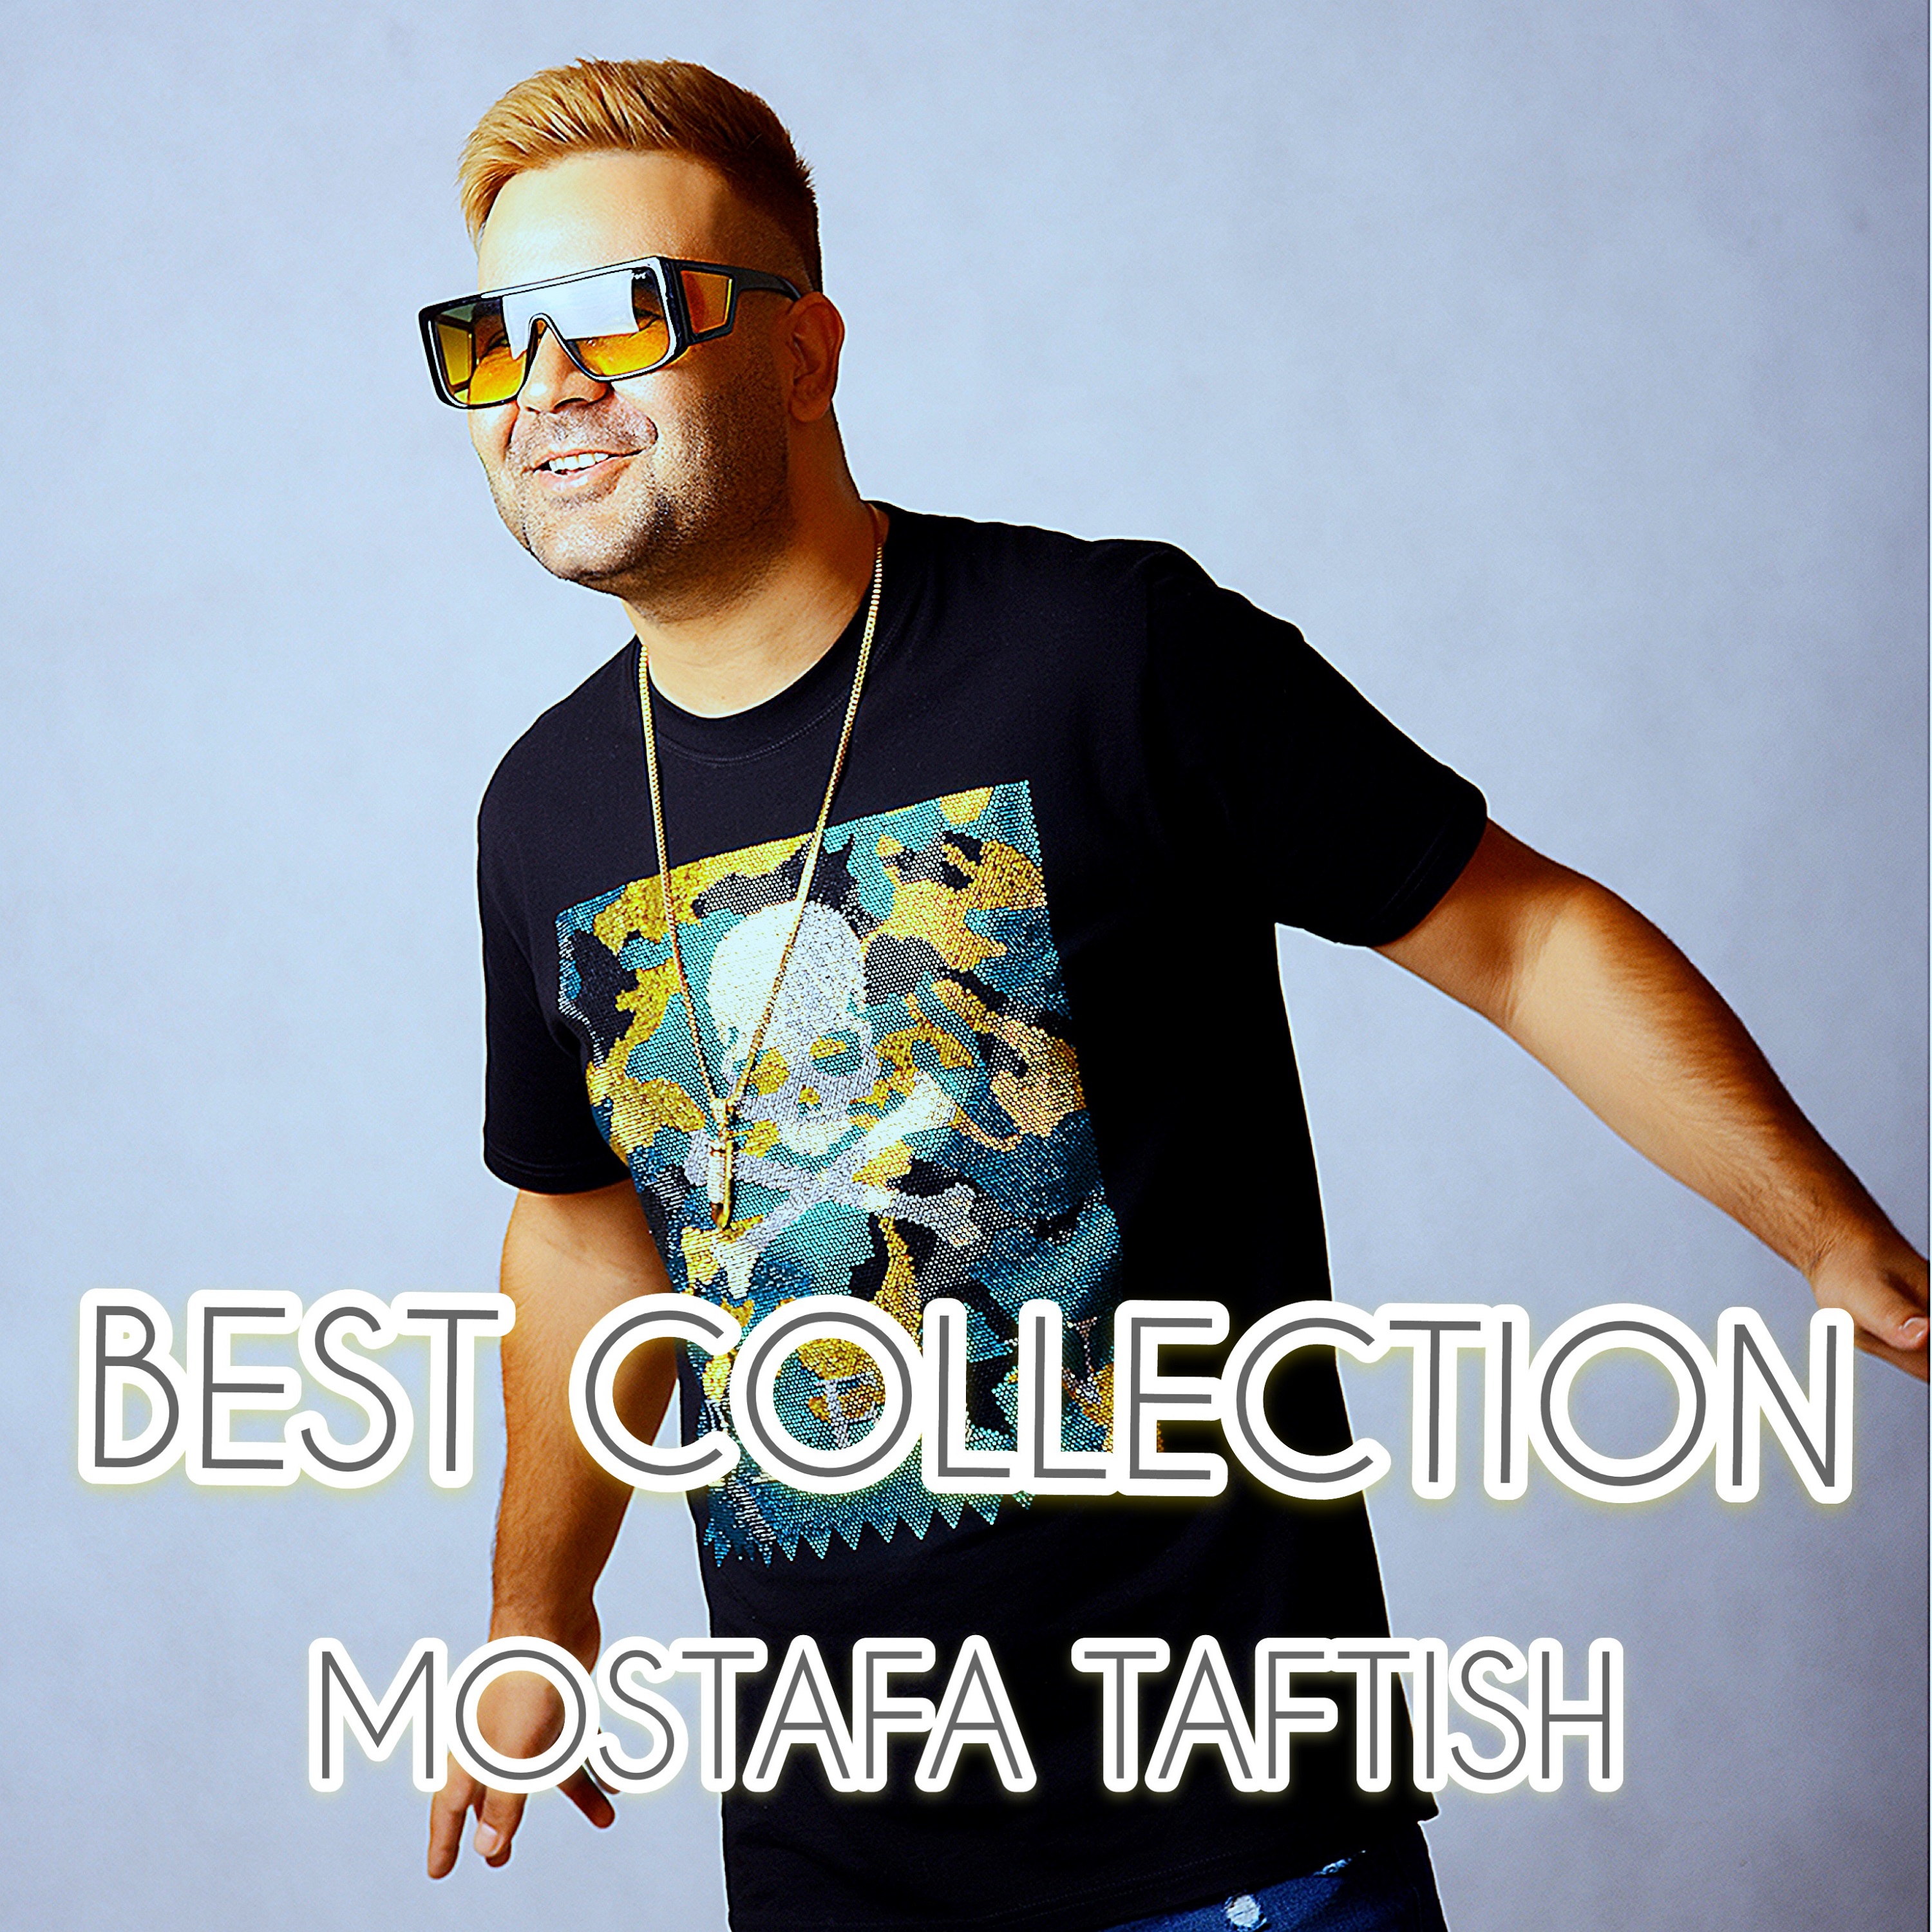  دانلود آهنگ جدید مصطفی تفتیش - ای جون | Download New Music By Mostafa Taftish - Ey Joon (feat. Abolfaz Esmaeili)